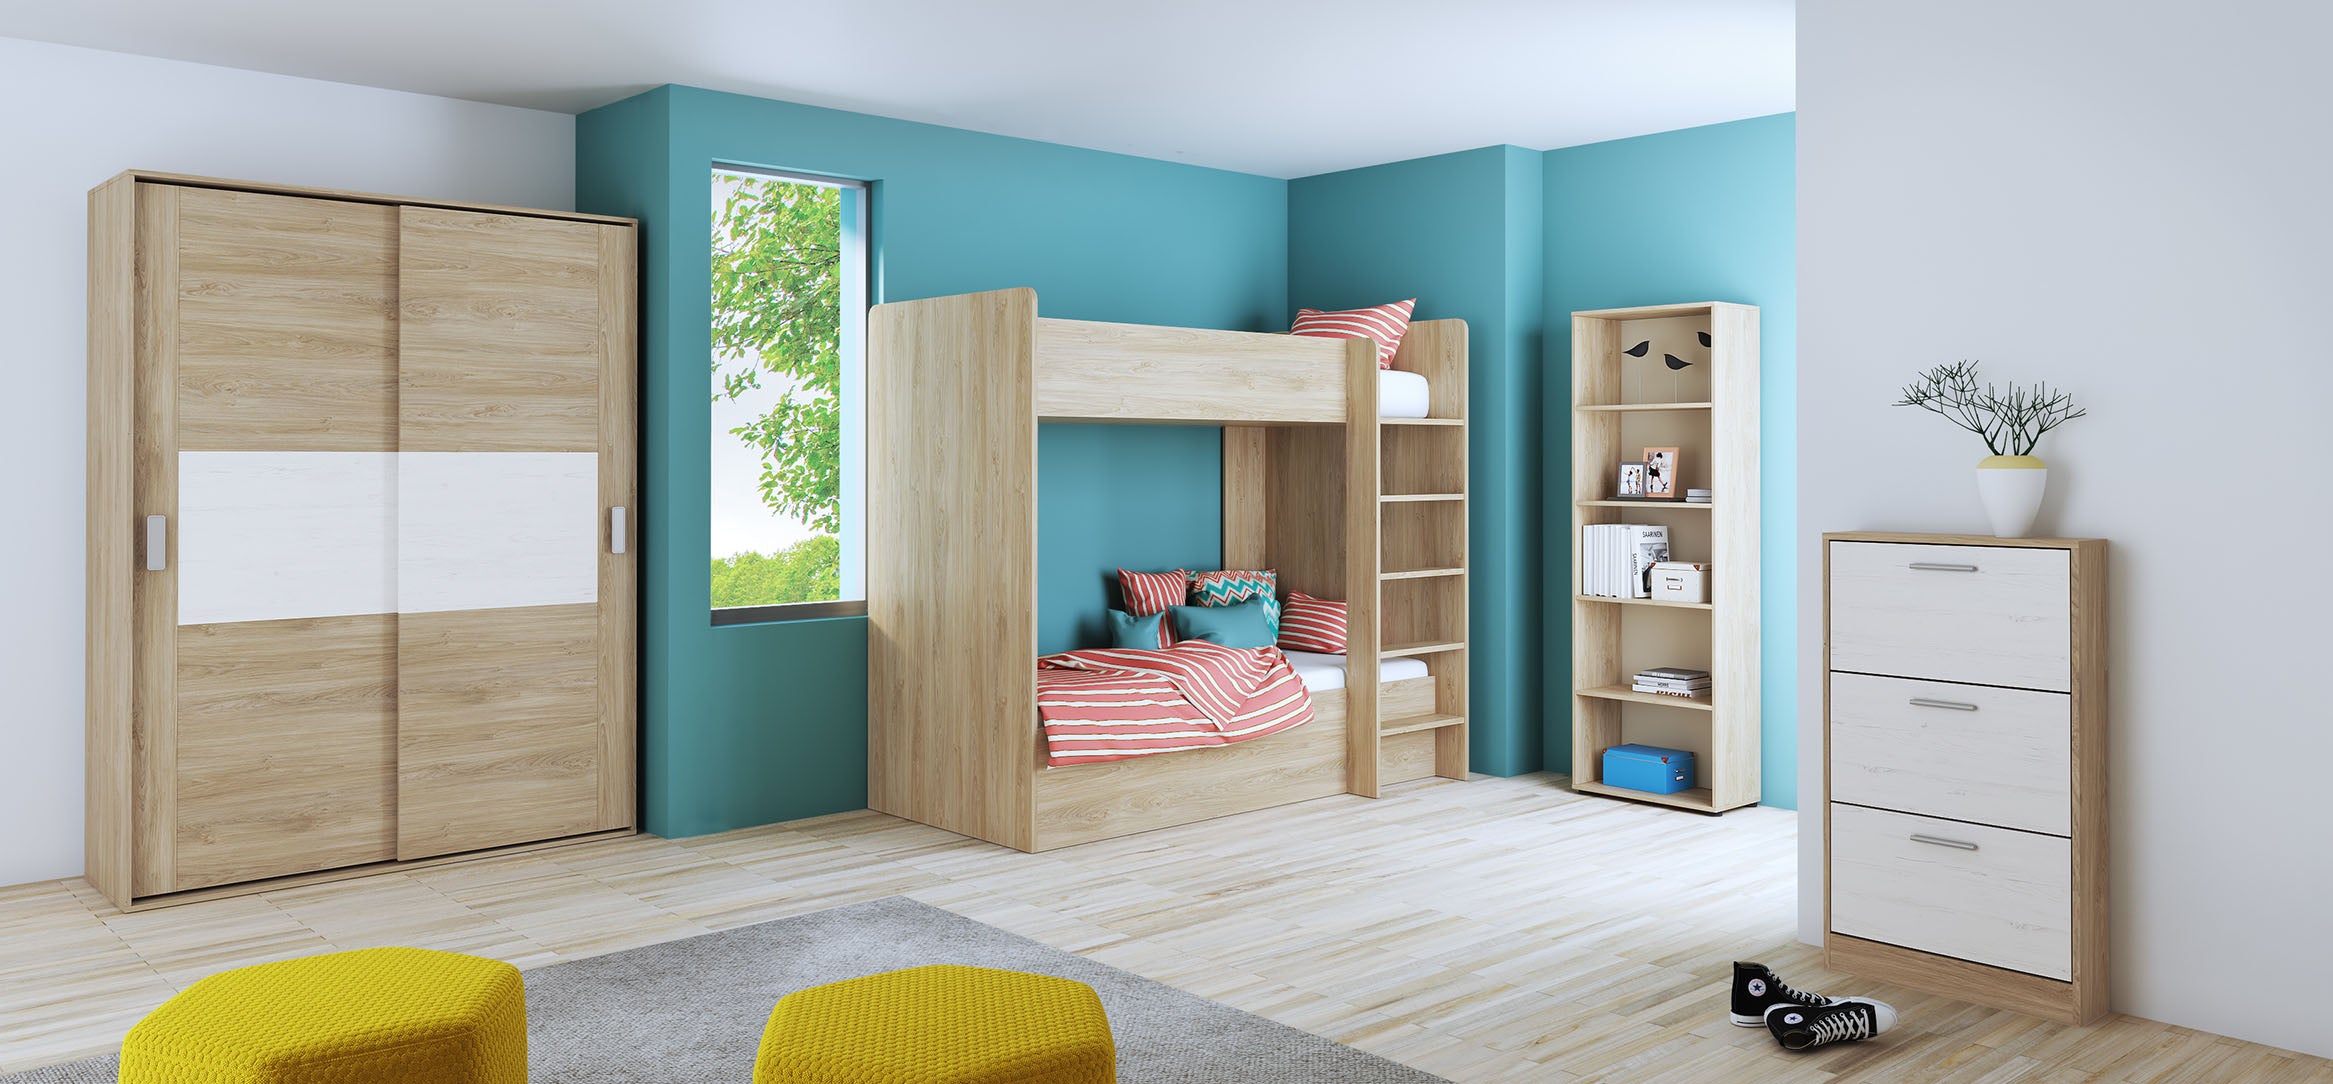 Dormitorio juvenil: 2 armarios, cama, escritorio y estante - Luddo 16 - Don  Baraton: tienda de sofás, colchones y muebles